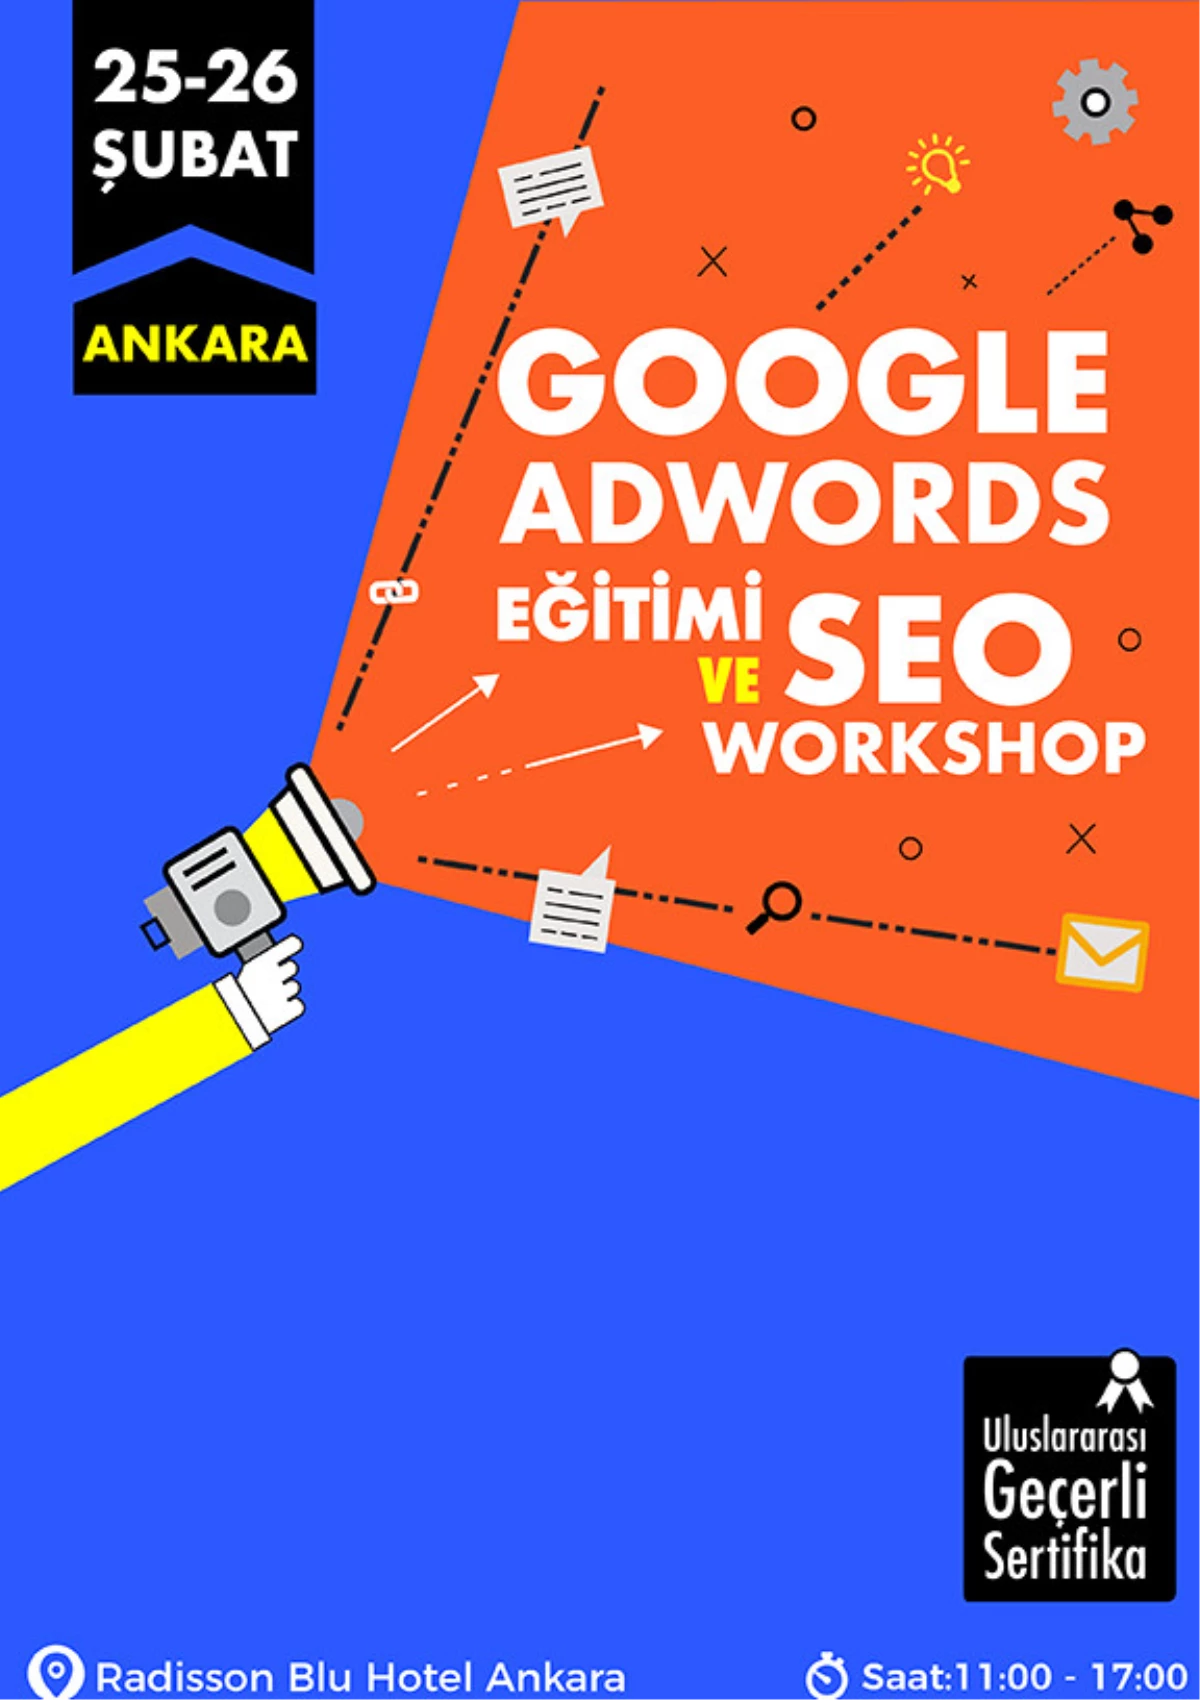 Google Adwords Eğitimi ve Seo Workshop (Ankara)